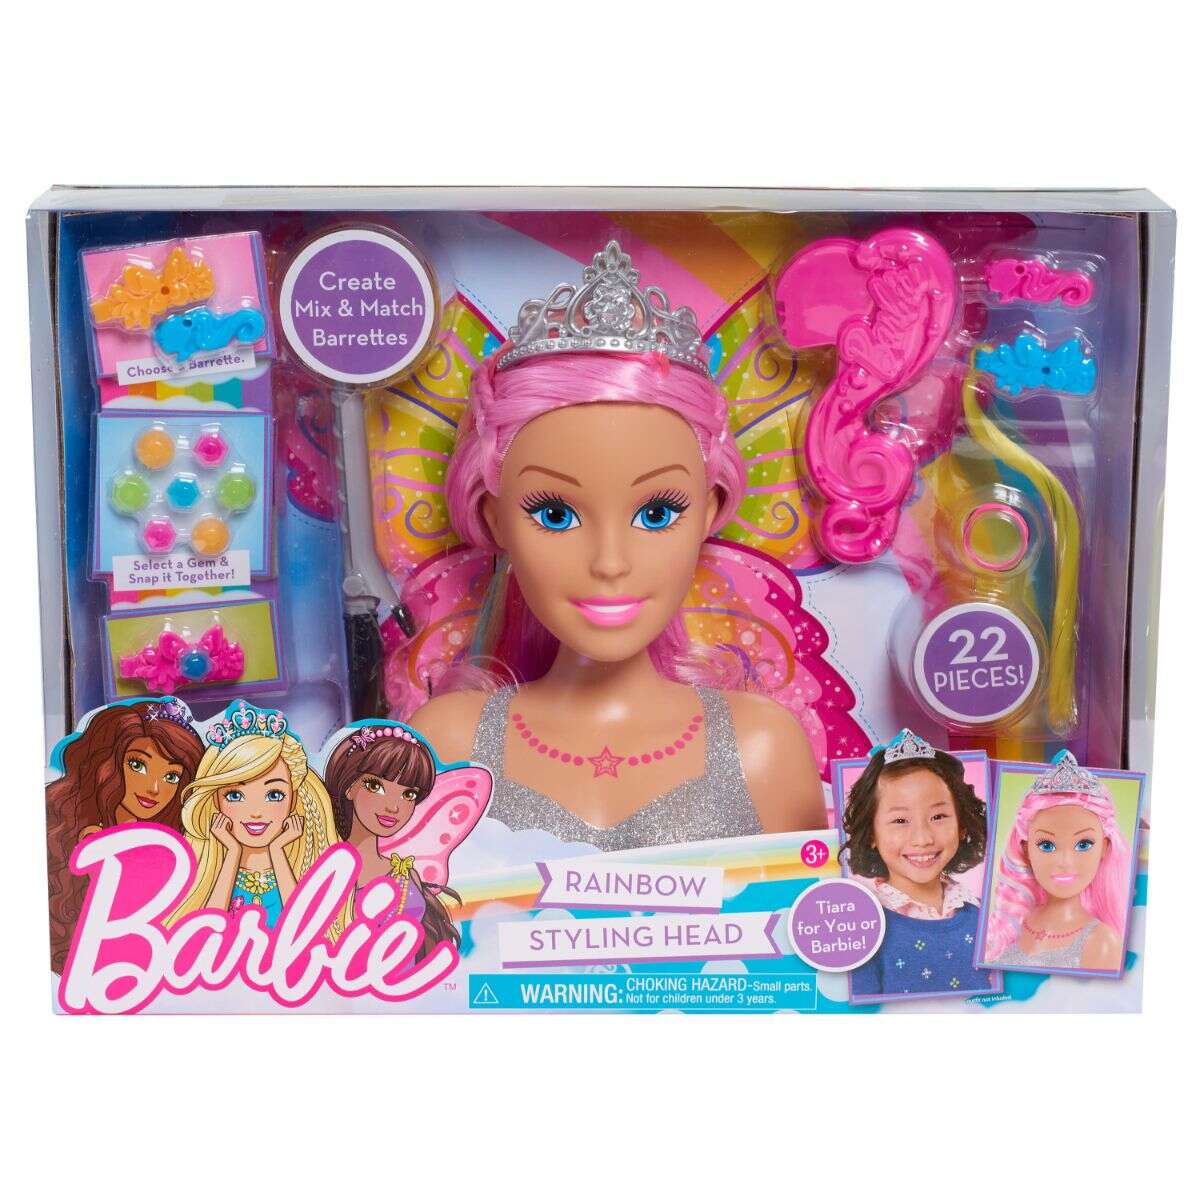 Papusa Barbie Styling Head Dreamtopia - Manechin pentru coafat cu accesorii incluse